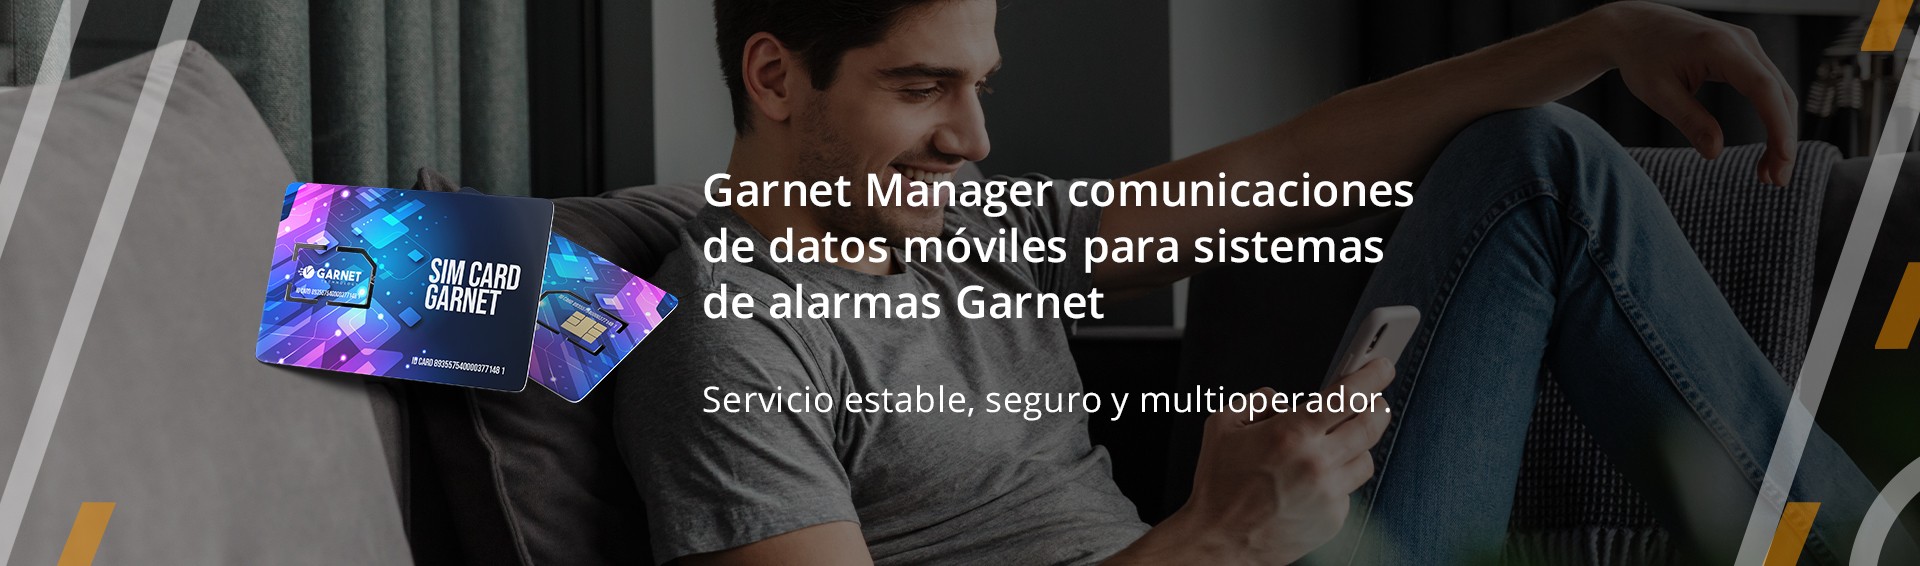 Garnet Manager